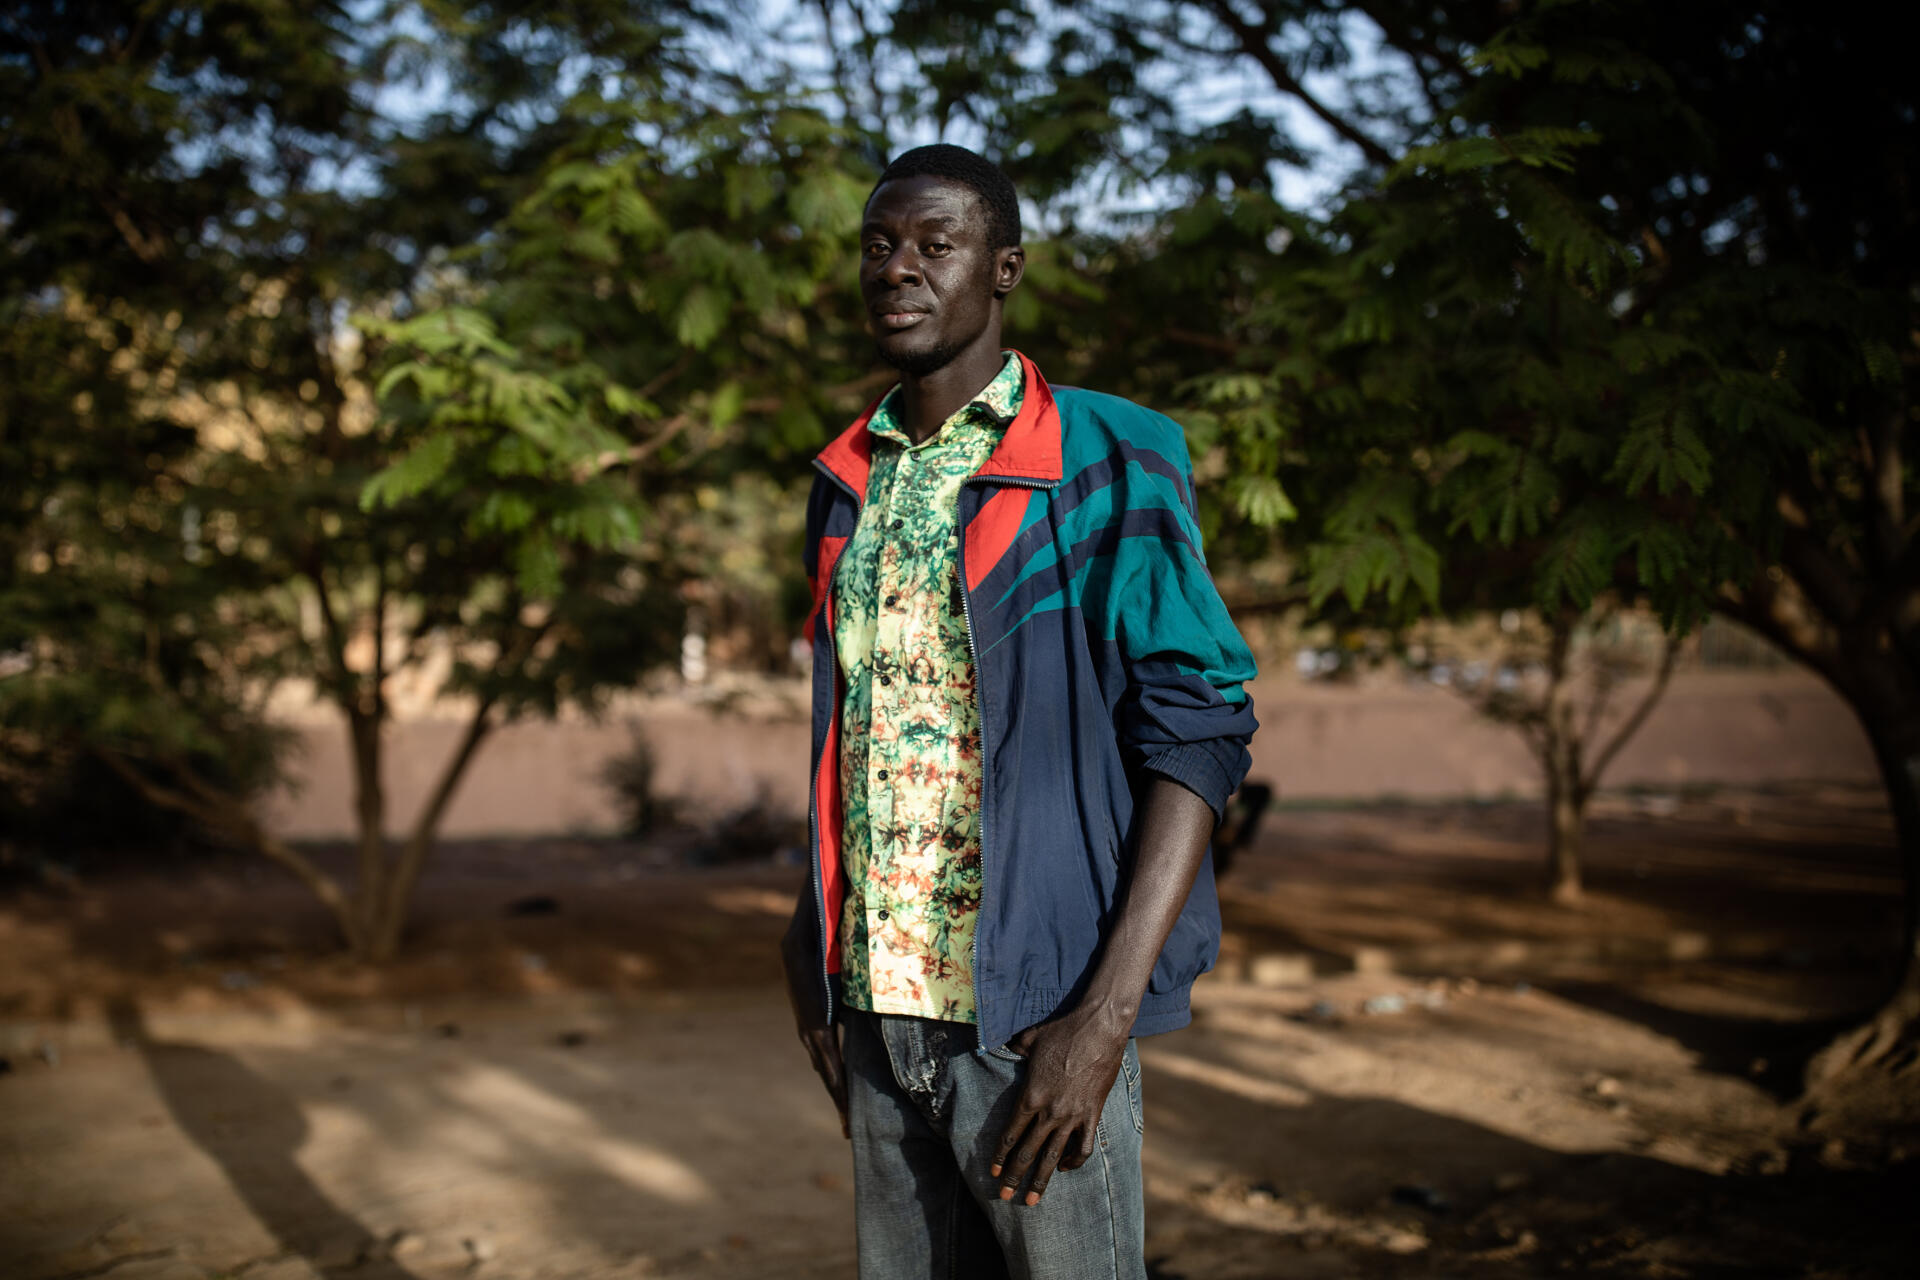 Koumtobre, étudiant, fait partie des organisateurs des débats "Deux heures pour nous, deux heures pour Kamita" qui se tiennent tous les jours sur le campus universitaire de Ouagadougou.